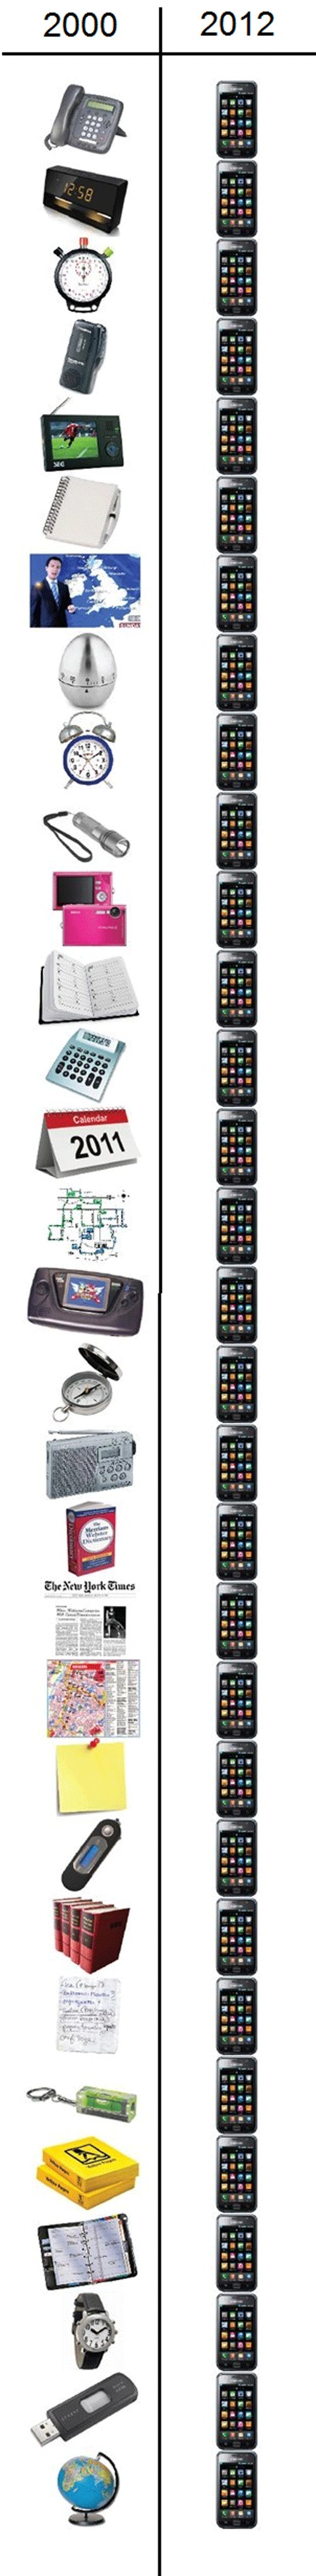 Comparativa entre los gadgets del 2.000 y 2012 #Humor 1